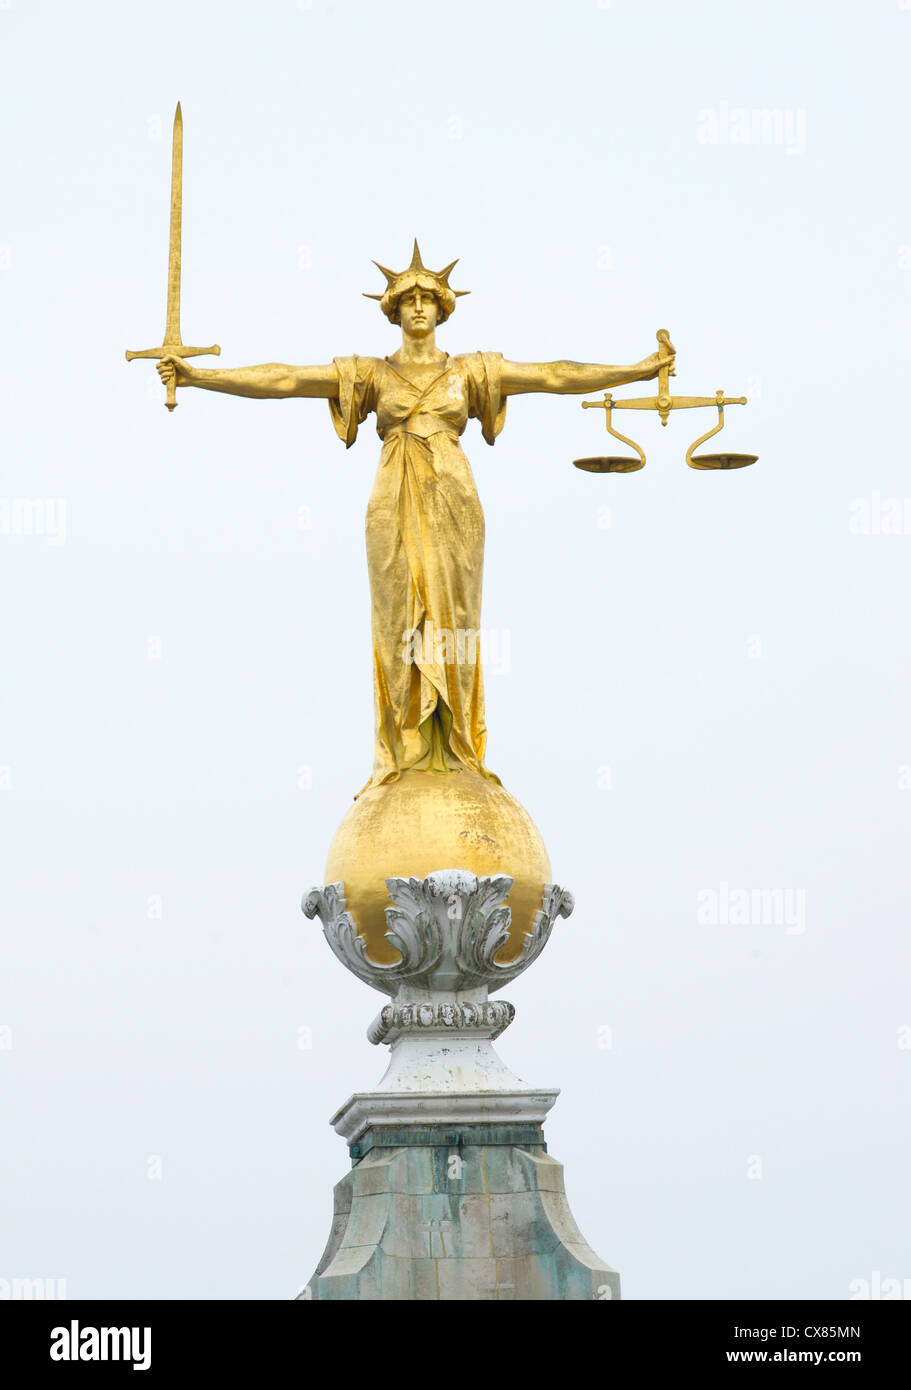 Or la Dame de bronze statue de la Justice à l'épée et d'une balance au-dessus de la Cour Criminelle Centrale, Old Bailey, London Banque D'Images